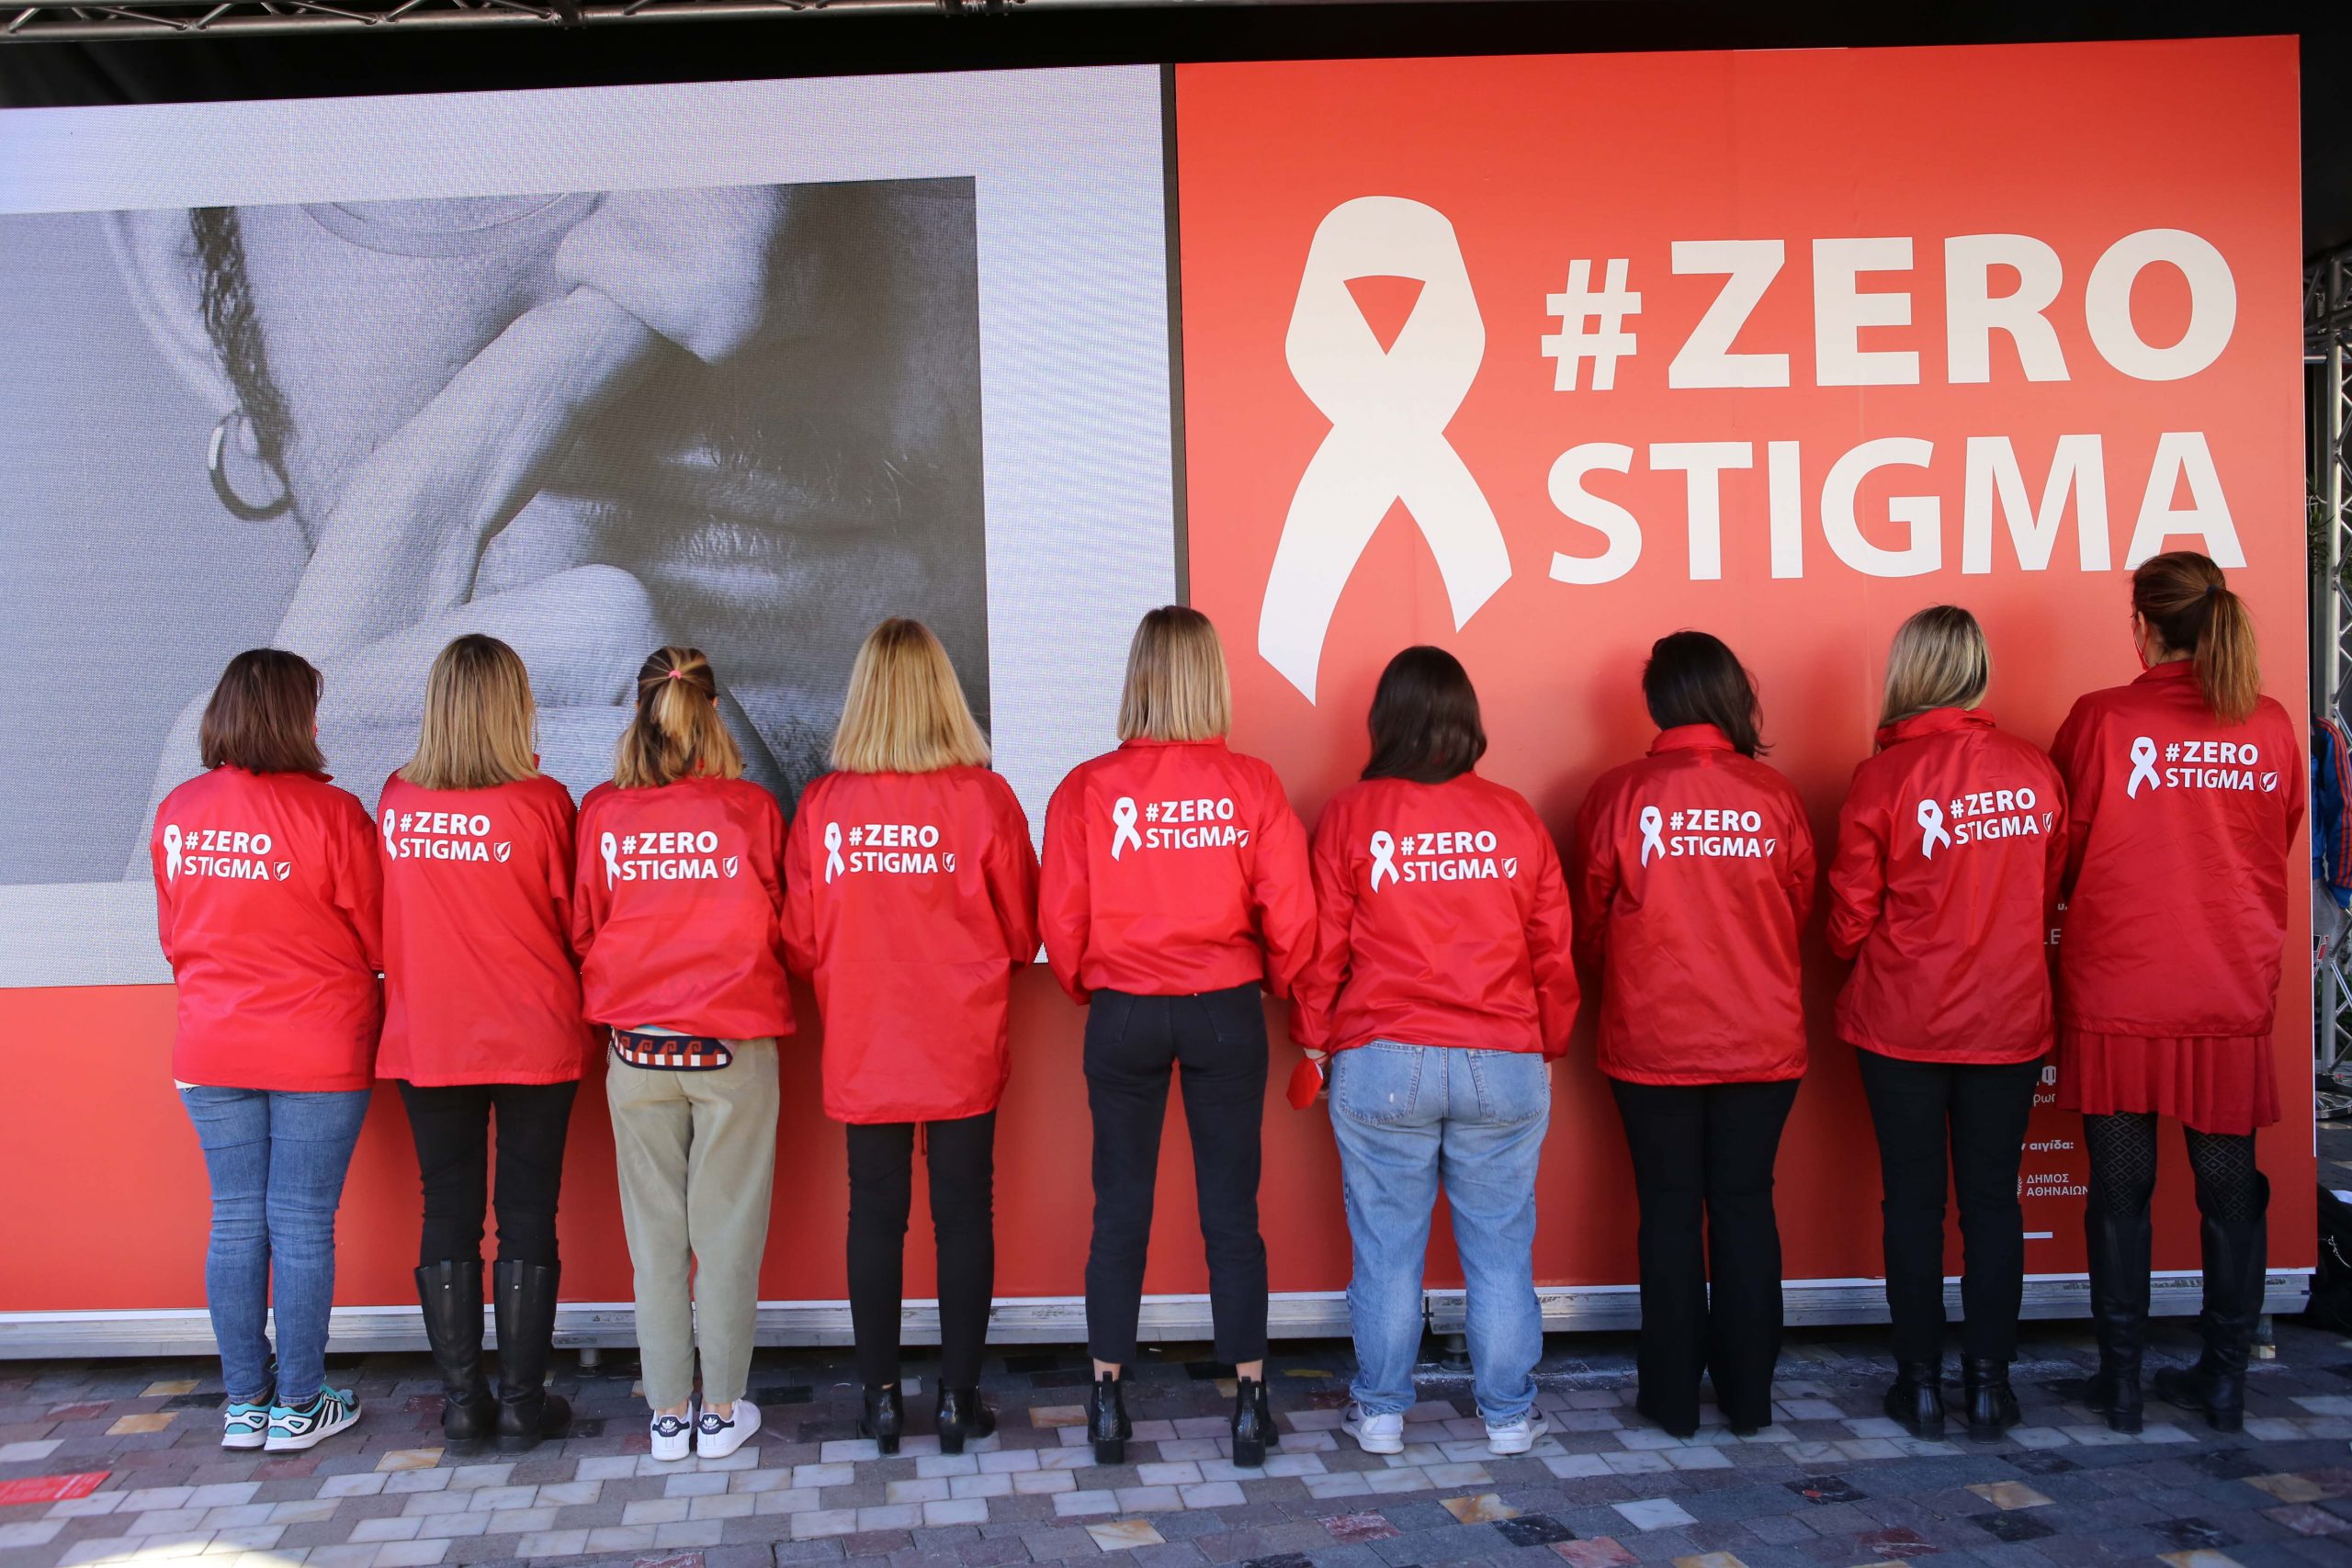 #ZeroStigma : Νίκησε τον φόβο του στίγματος και κάνε την εξέταση για τον HIV